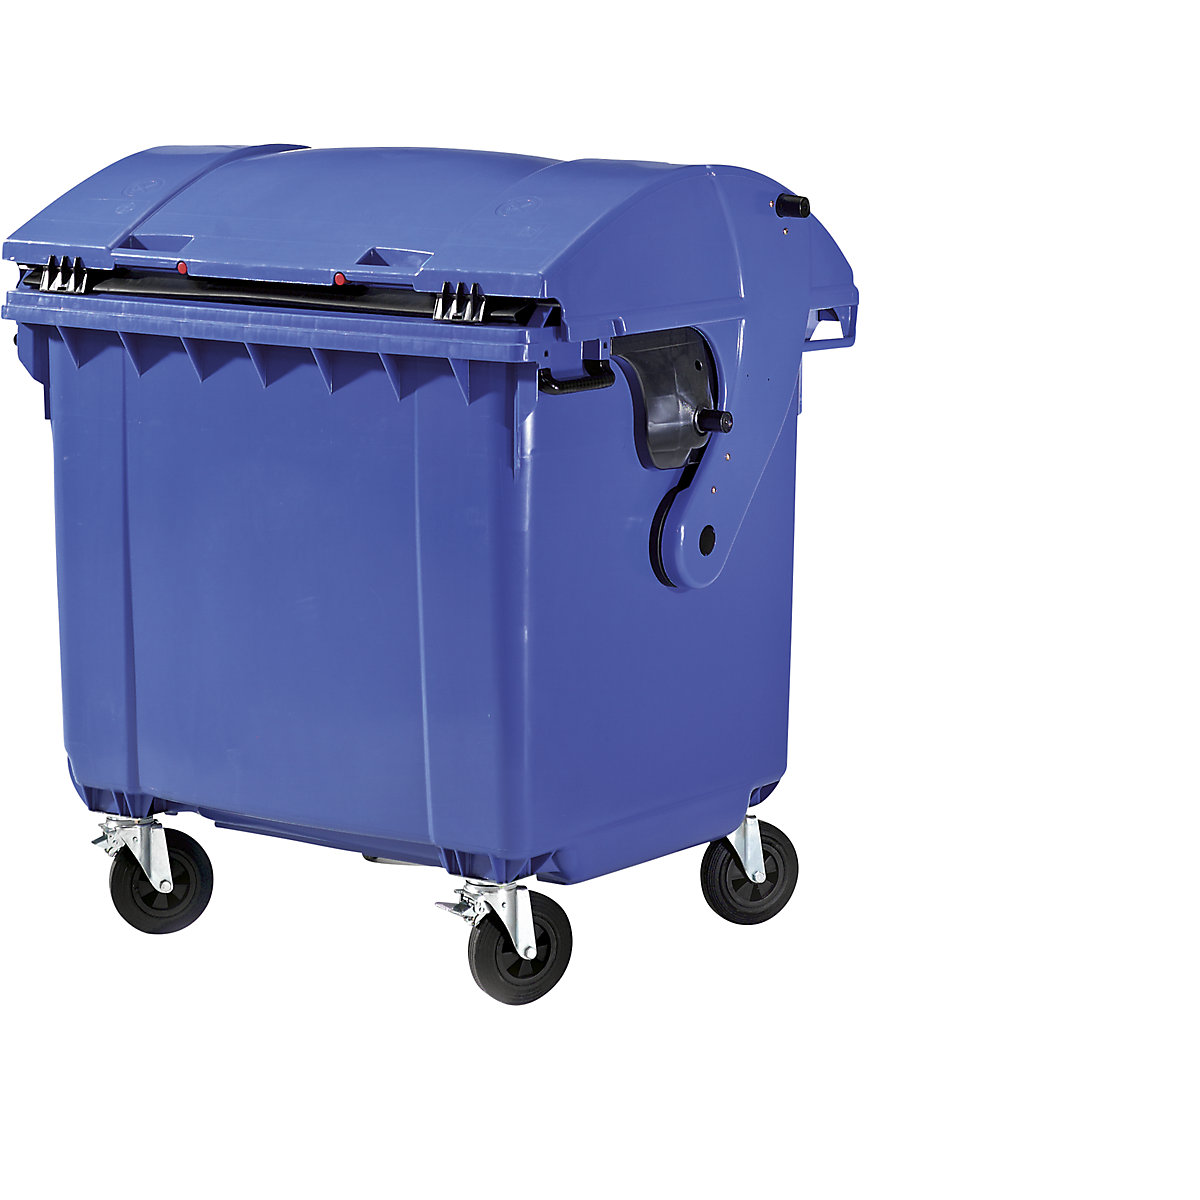 Müllcontainer aus Kunststoff, DIN EN 840, Volumen 1100 l, BxHxT 1360 x 1465 x 1100 mm, Schiebedeckel, Kindersicherung, blau